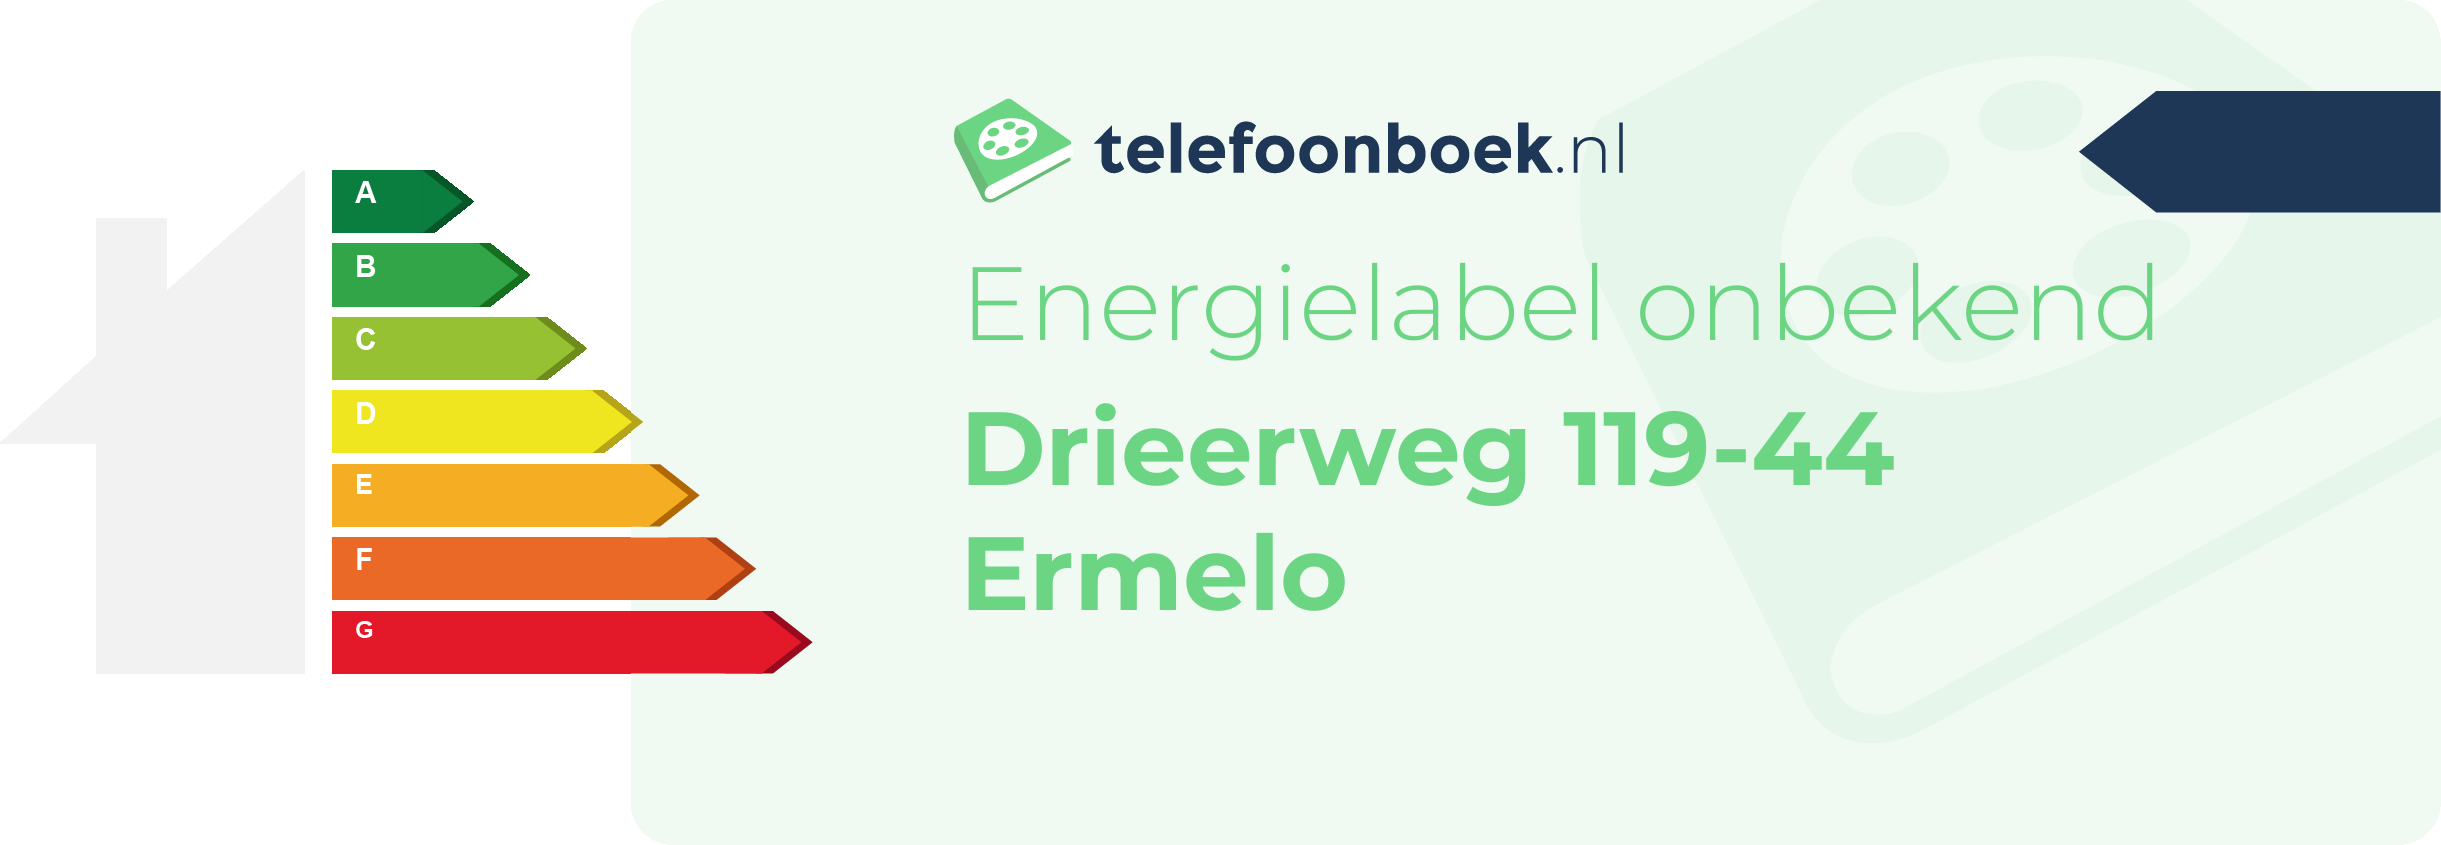 Energielabel Drieerweg 119-44 Ermelo